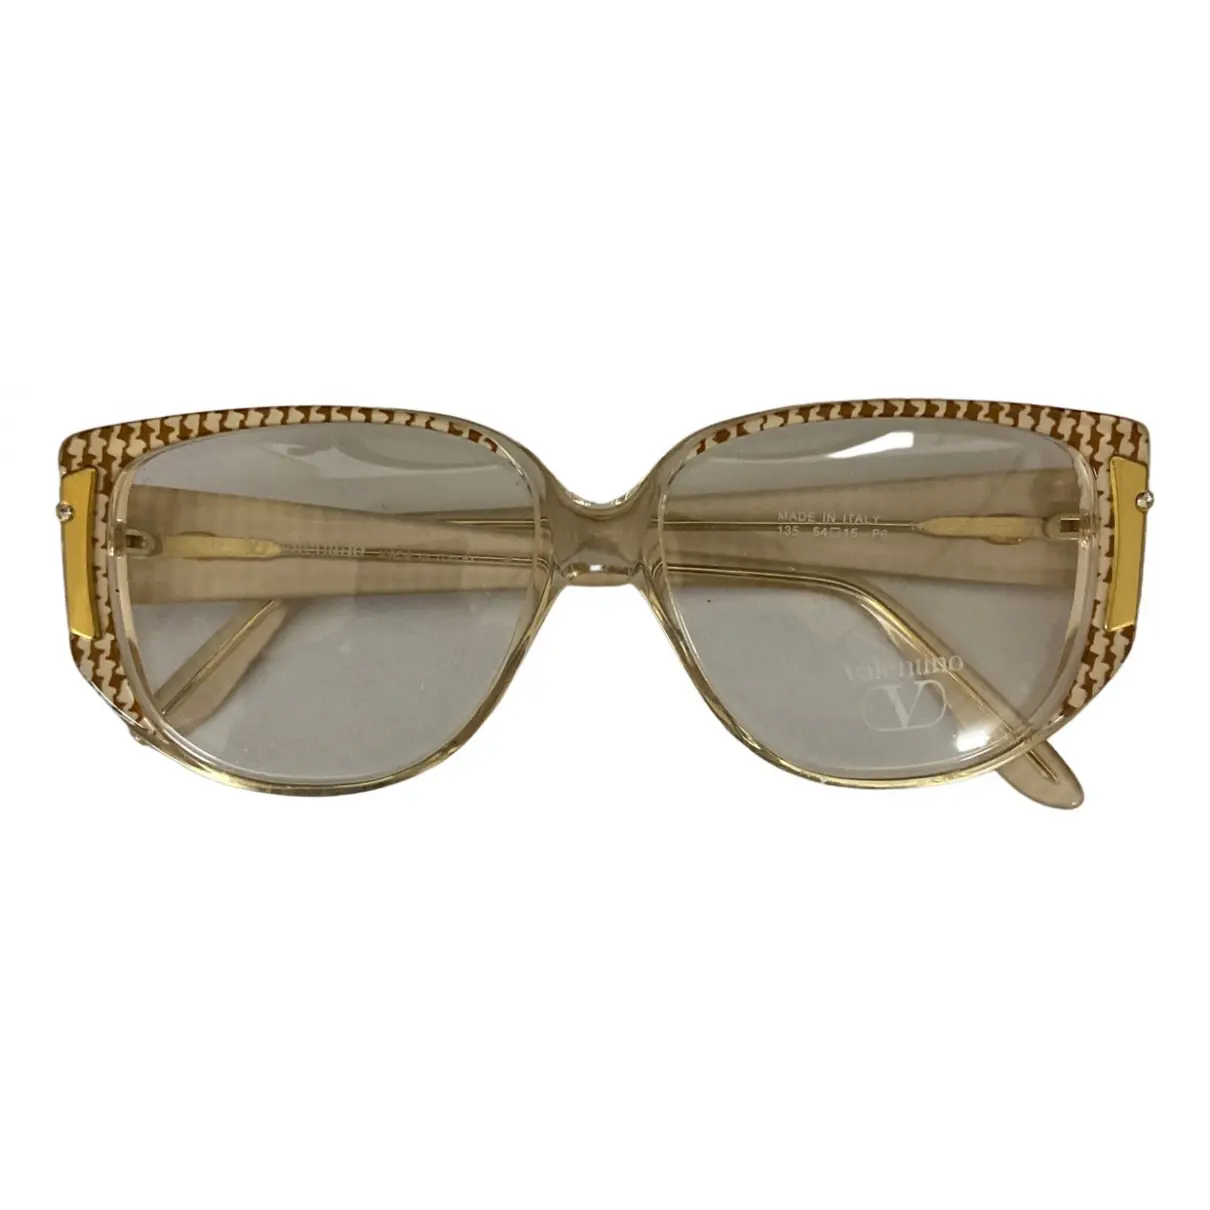 VLogo sunglasses Valentino Garavani - Vintage